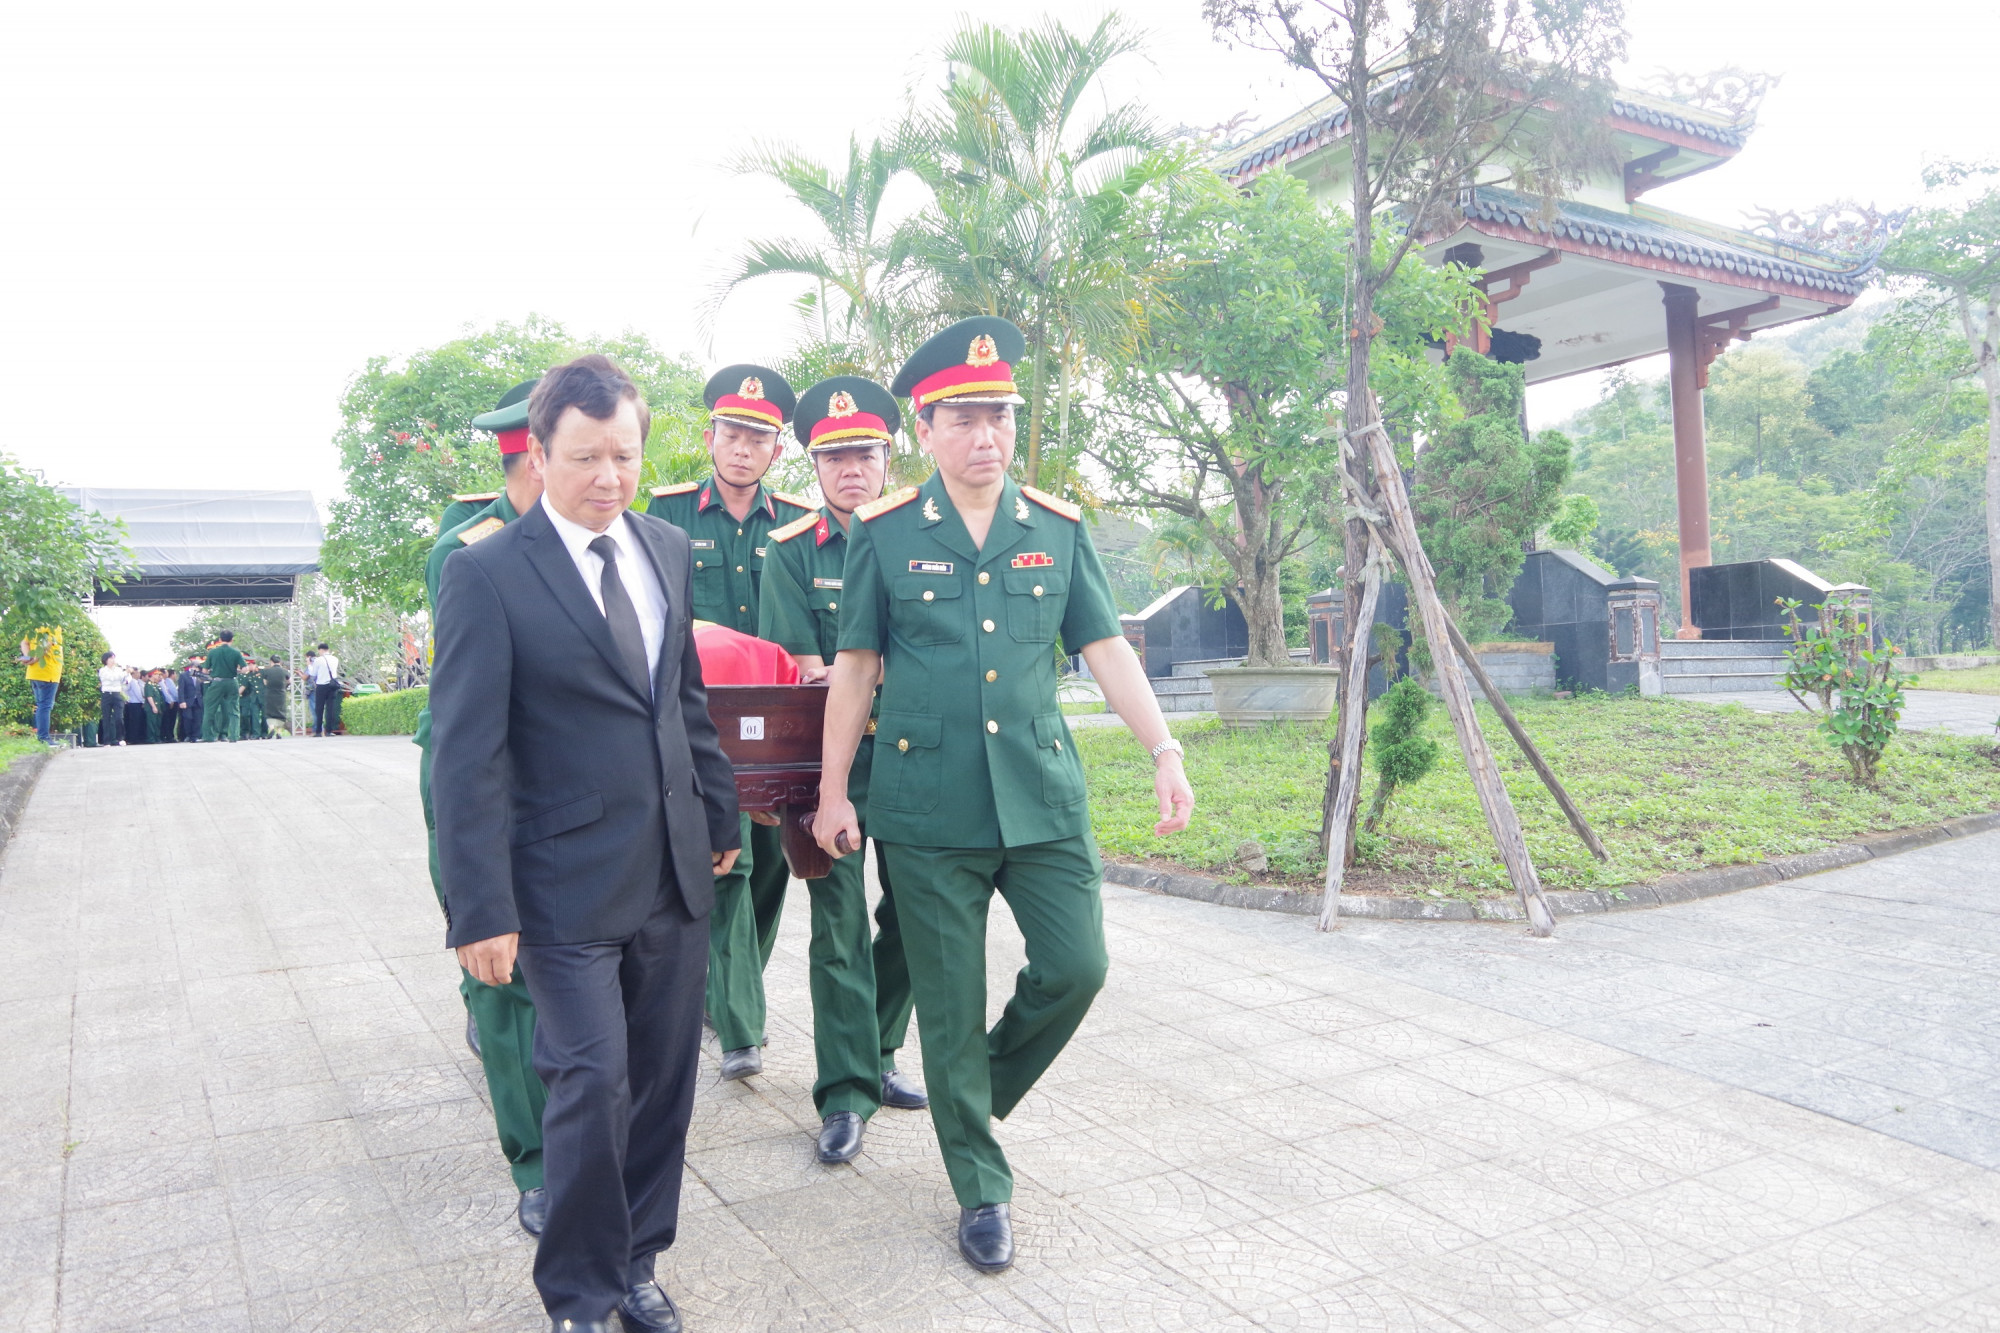 Ông Lê Trường Lưu, Ủy viên Trung ương Đảng, Bí thư Tỉnh ủy Thừa Thiên- Huế cùng các đại biểu đến tham dự lễ tiễn đưa các liệt sĩ về nơi an nghỉ cuối cùng